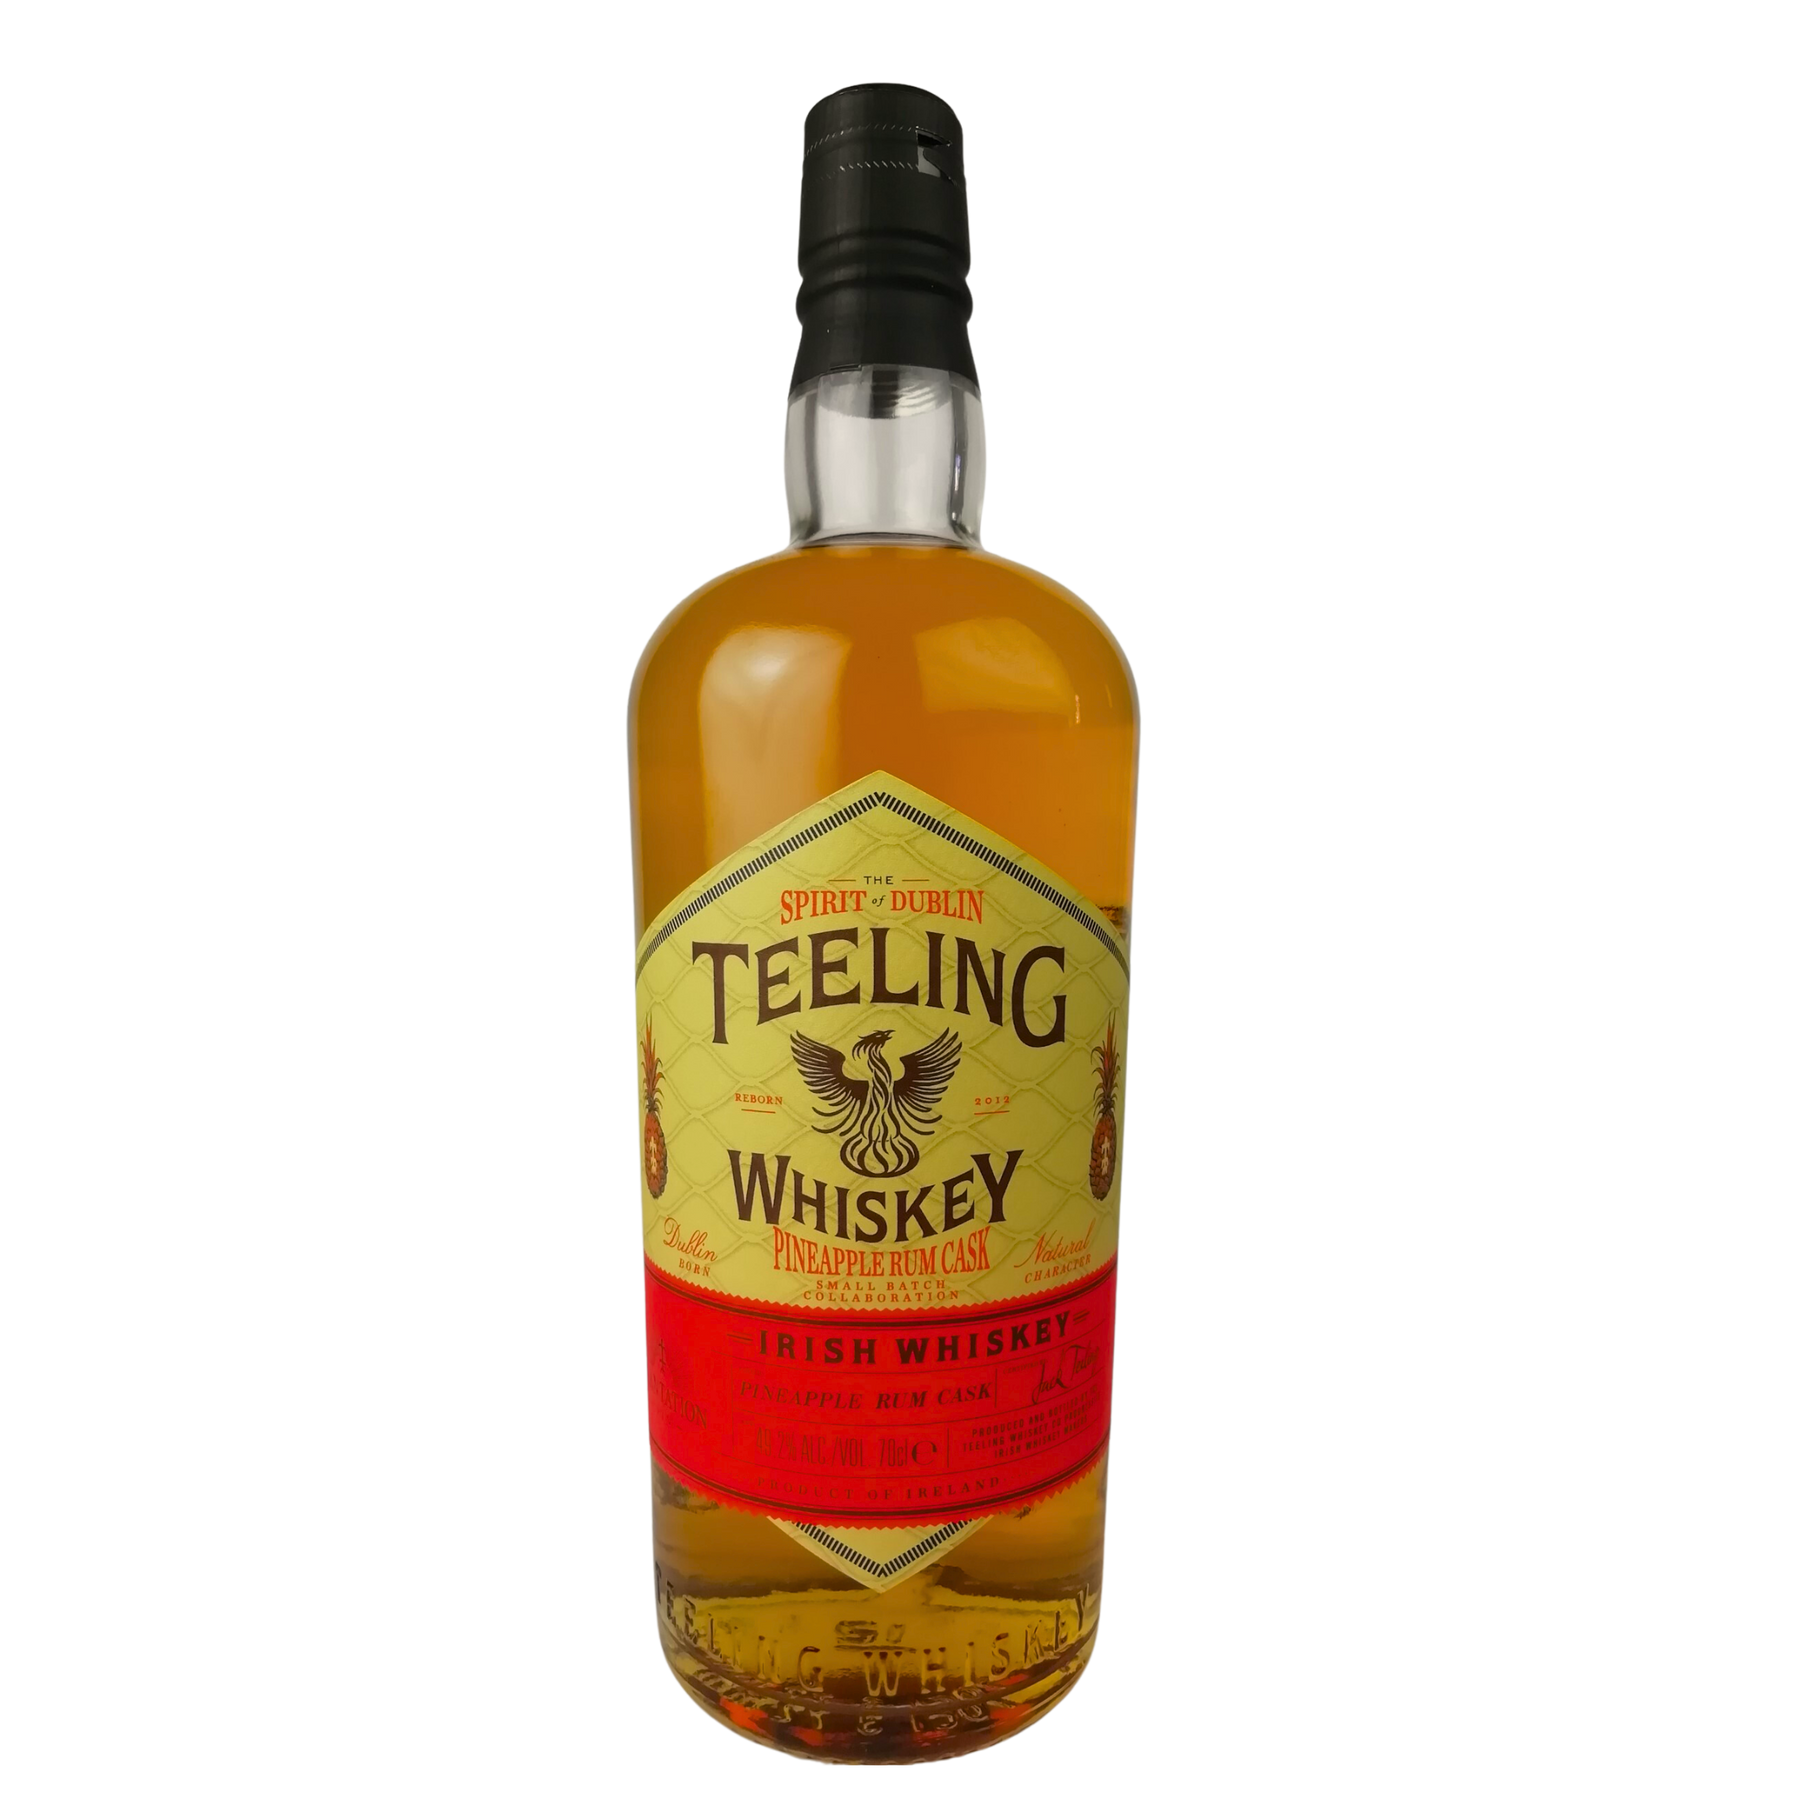 Teeling Pineapple Rum Cask Whiskey